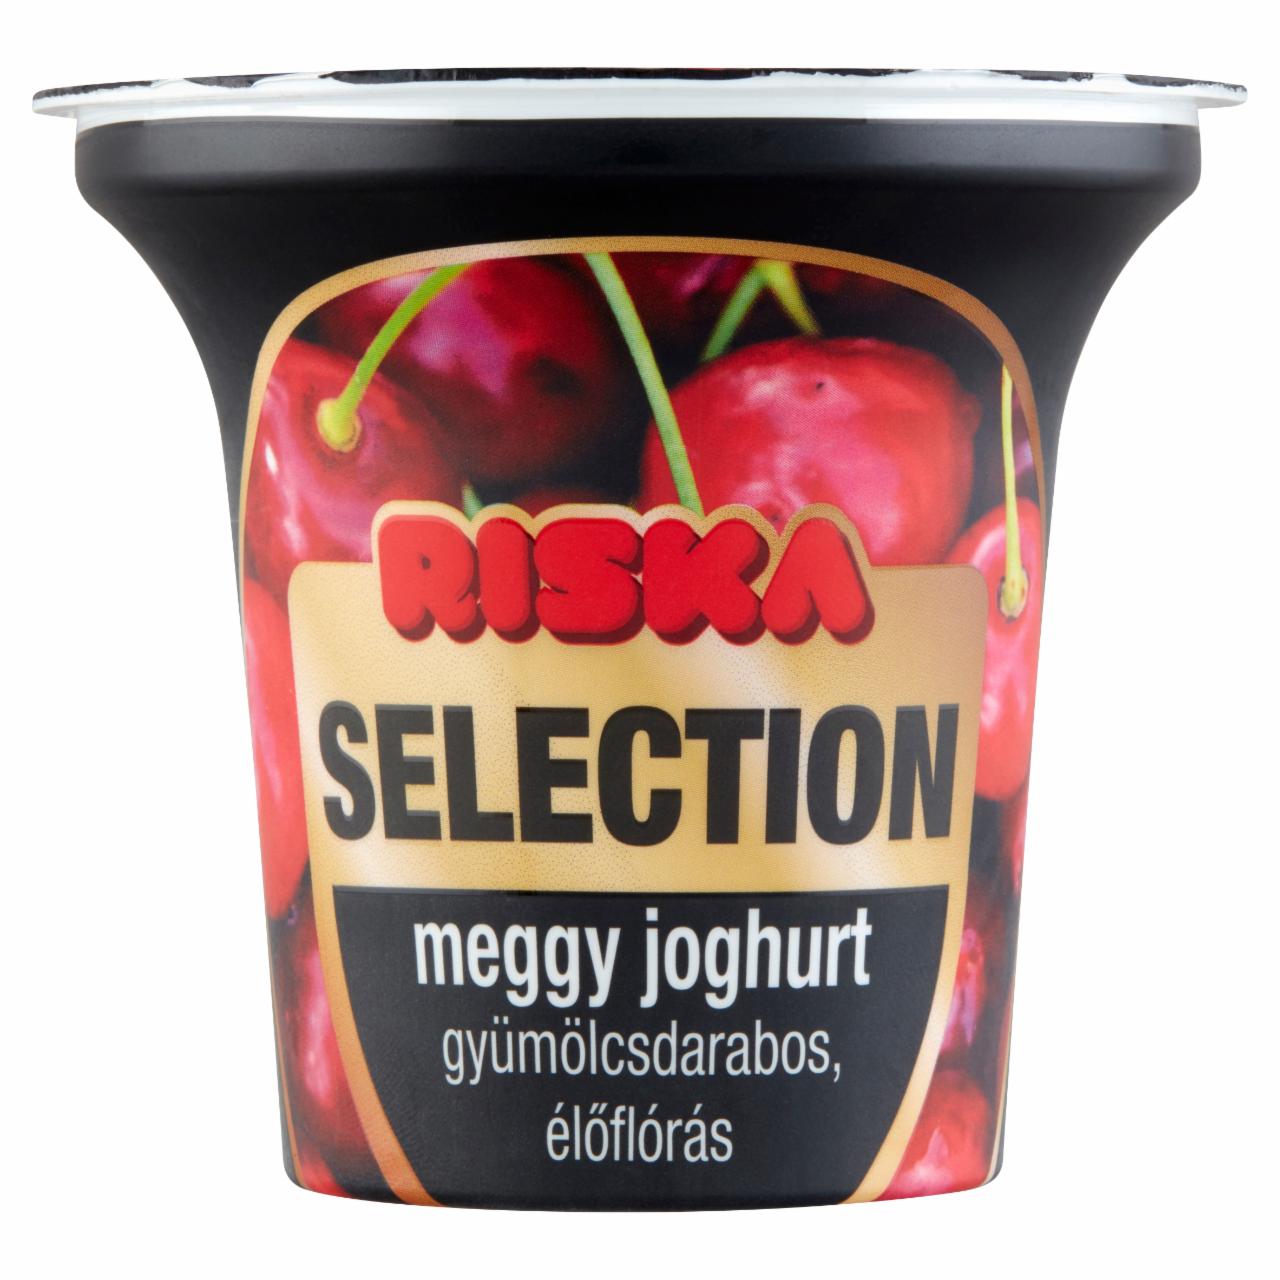 Képek - Riska Selection gyümölcsdarabos, élőflórás meggy joghurt 200 g